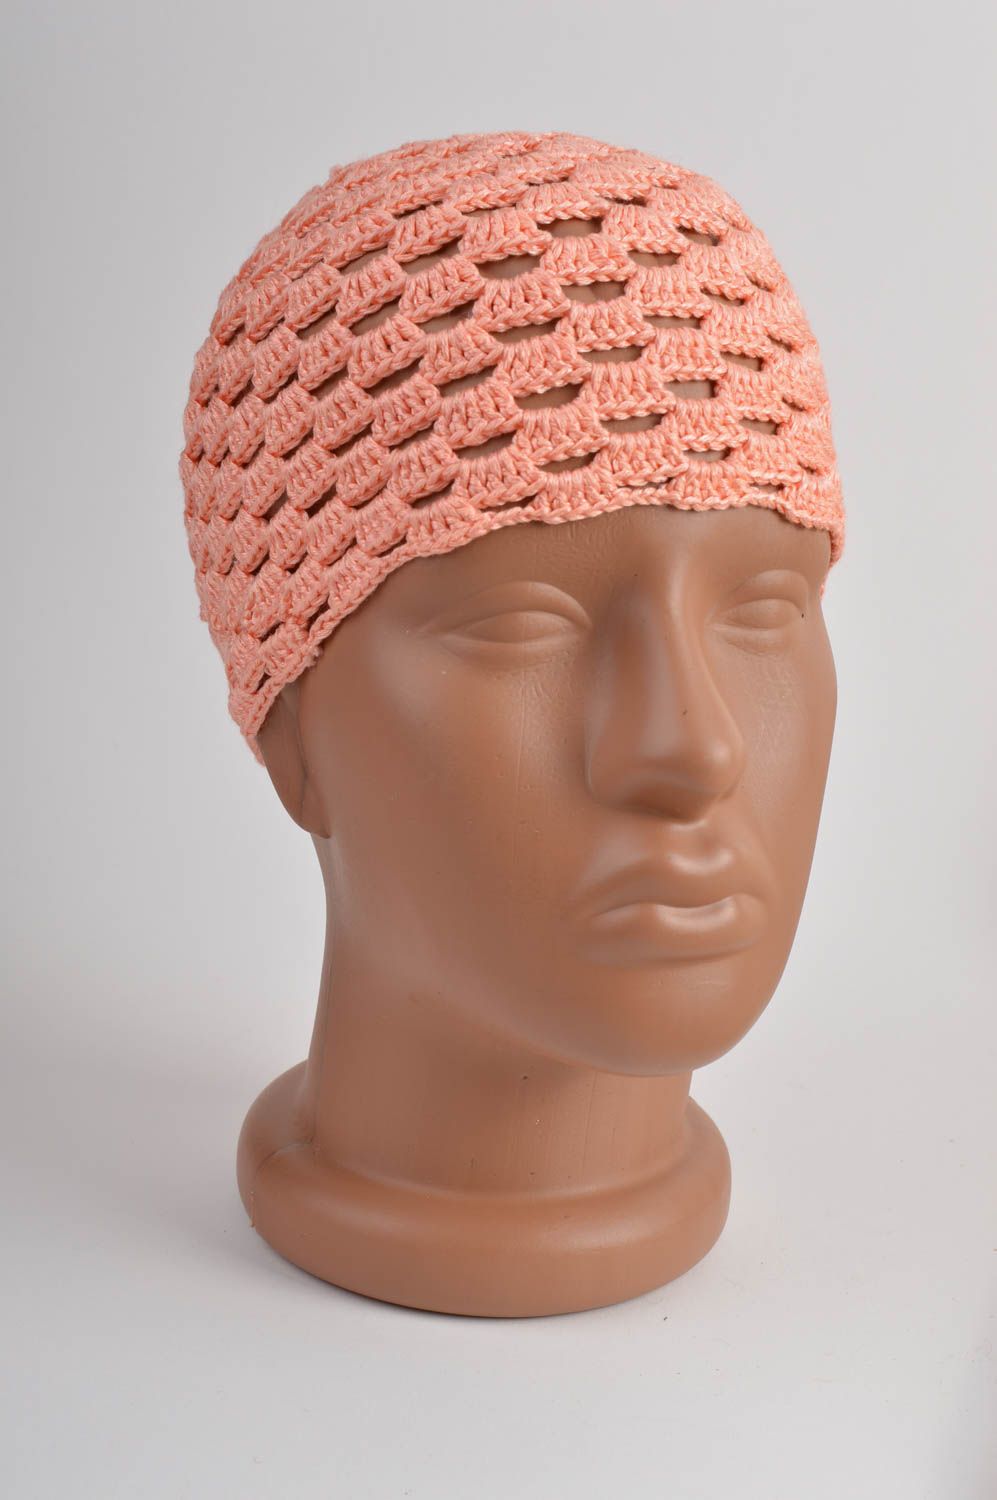 Вязаная шапка крючком персиковая красивая для девочки ручной работы хэнд мейд фото 2